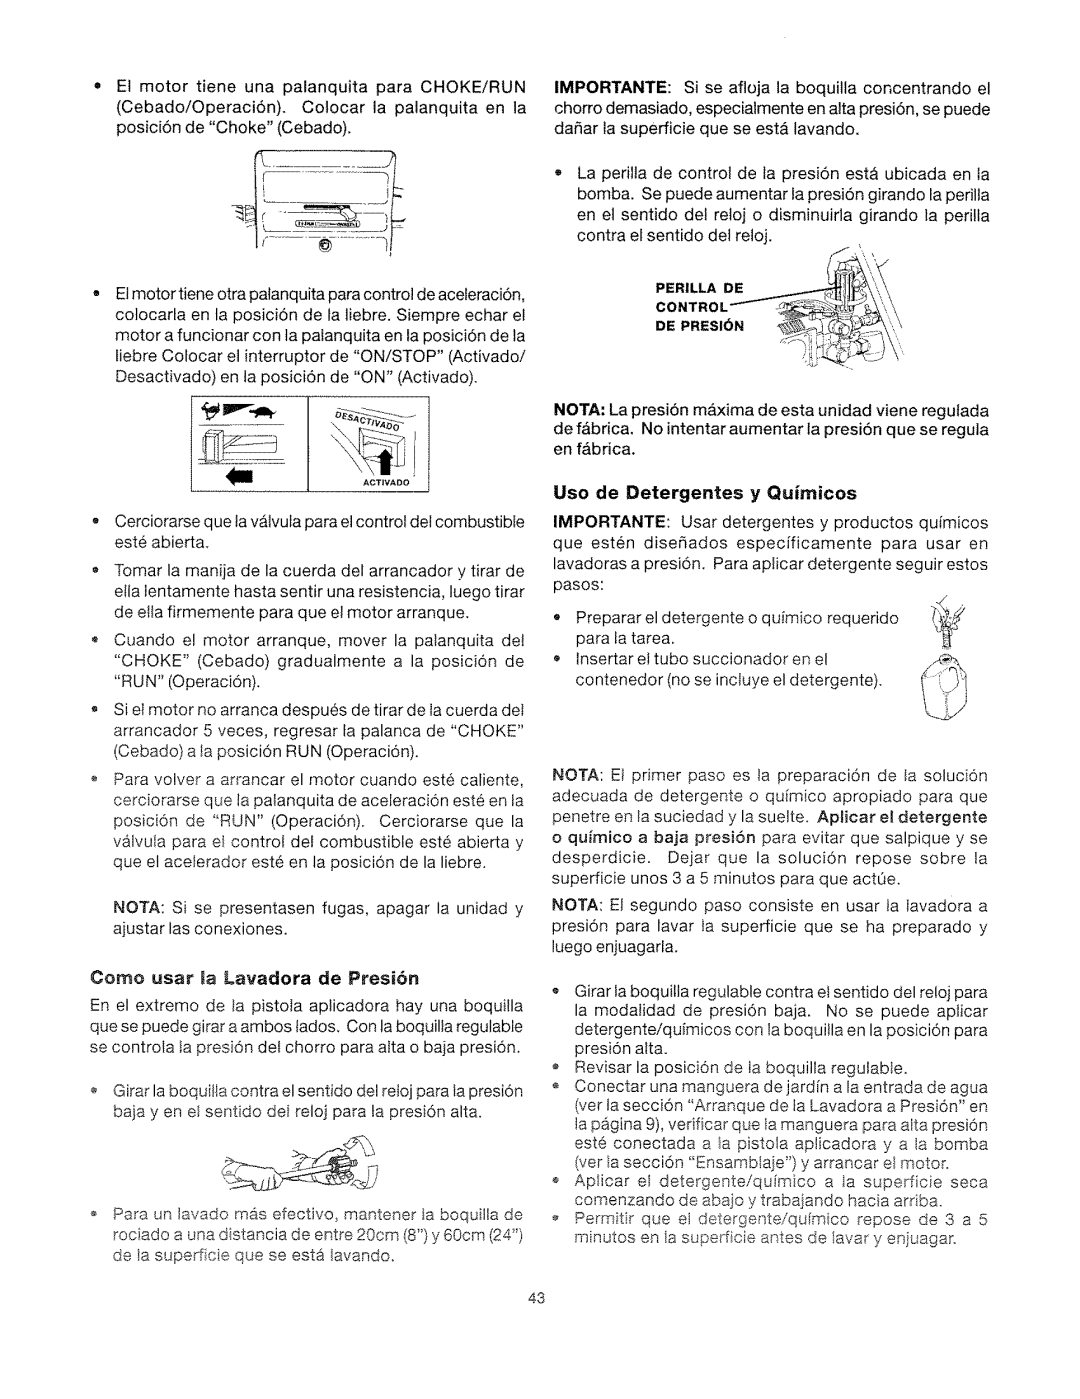 Craftsman 919.762500 manual Uso de Detergentes y Quimicos, Como usar Ja Lavadora de Presi6n 